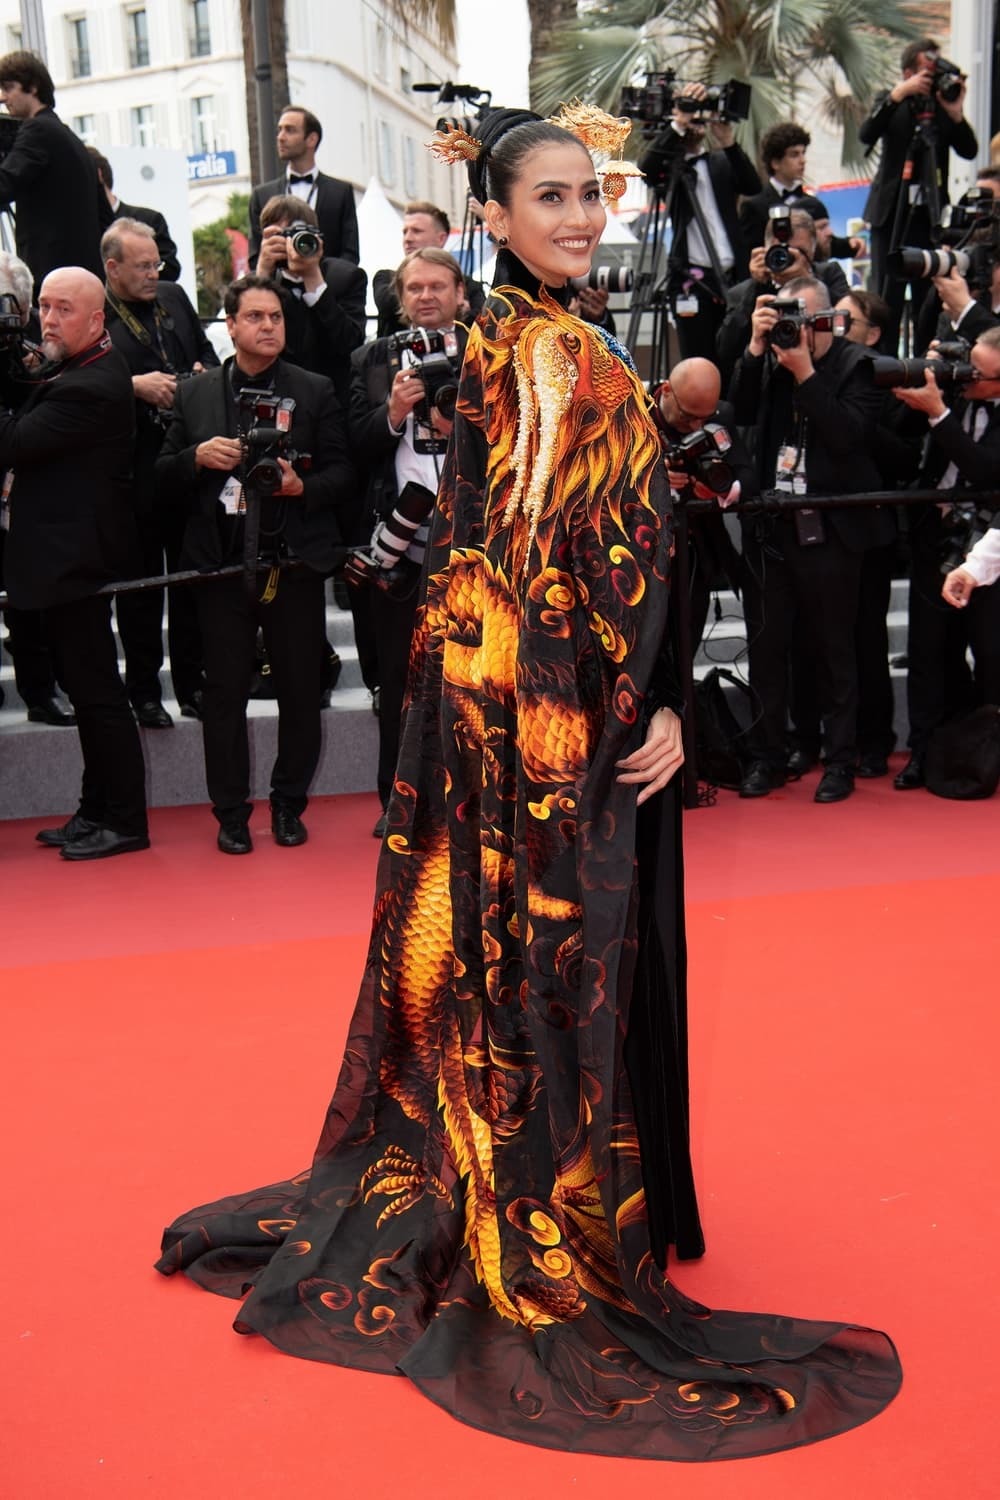  
Nàng Hậu trên thảm đỏ Cannes. (Ảnh: T.H)